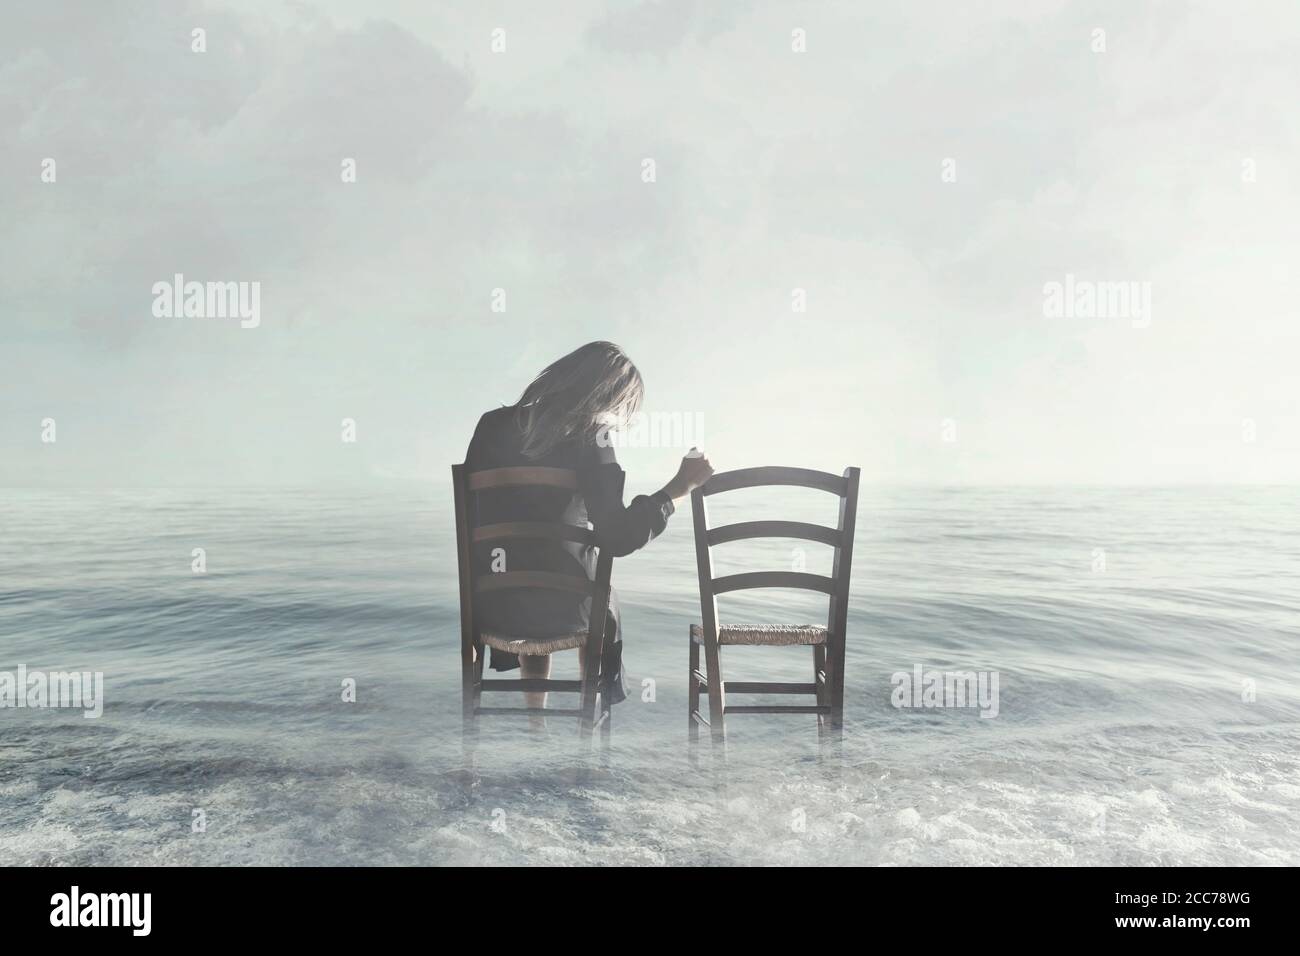 la donna triste guarda nostalgicamente alla sedia vuota del suo amante Foto Stock